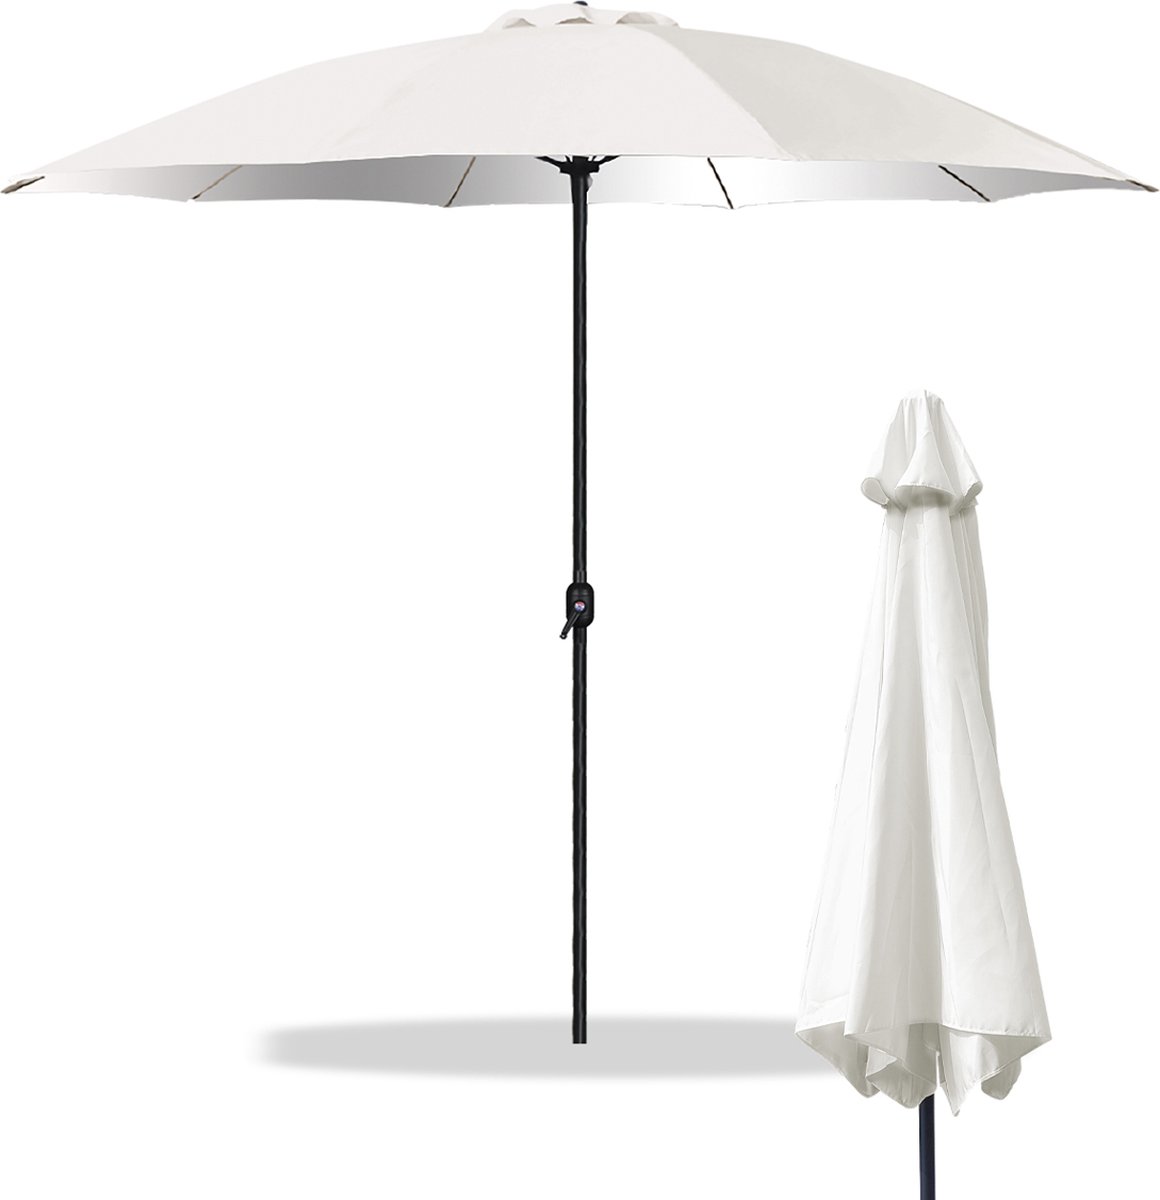 Sombrilla Parasol - Waterdicht - UV-bescherming - 300x300x244 cm - Tuin, strand, balkon etc. - Wit